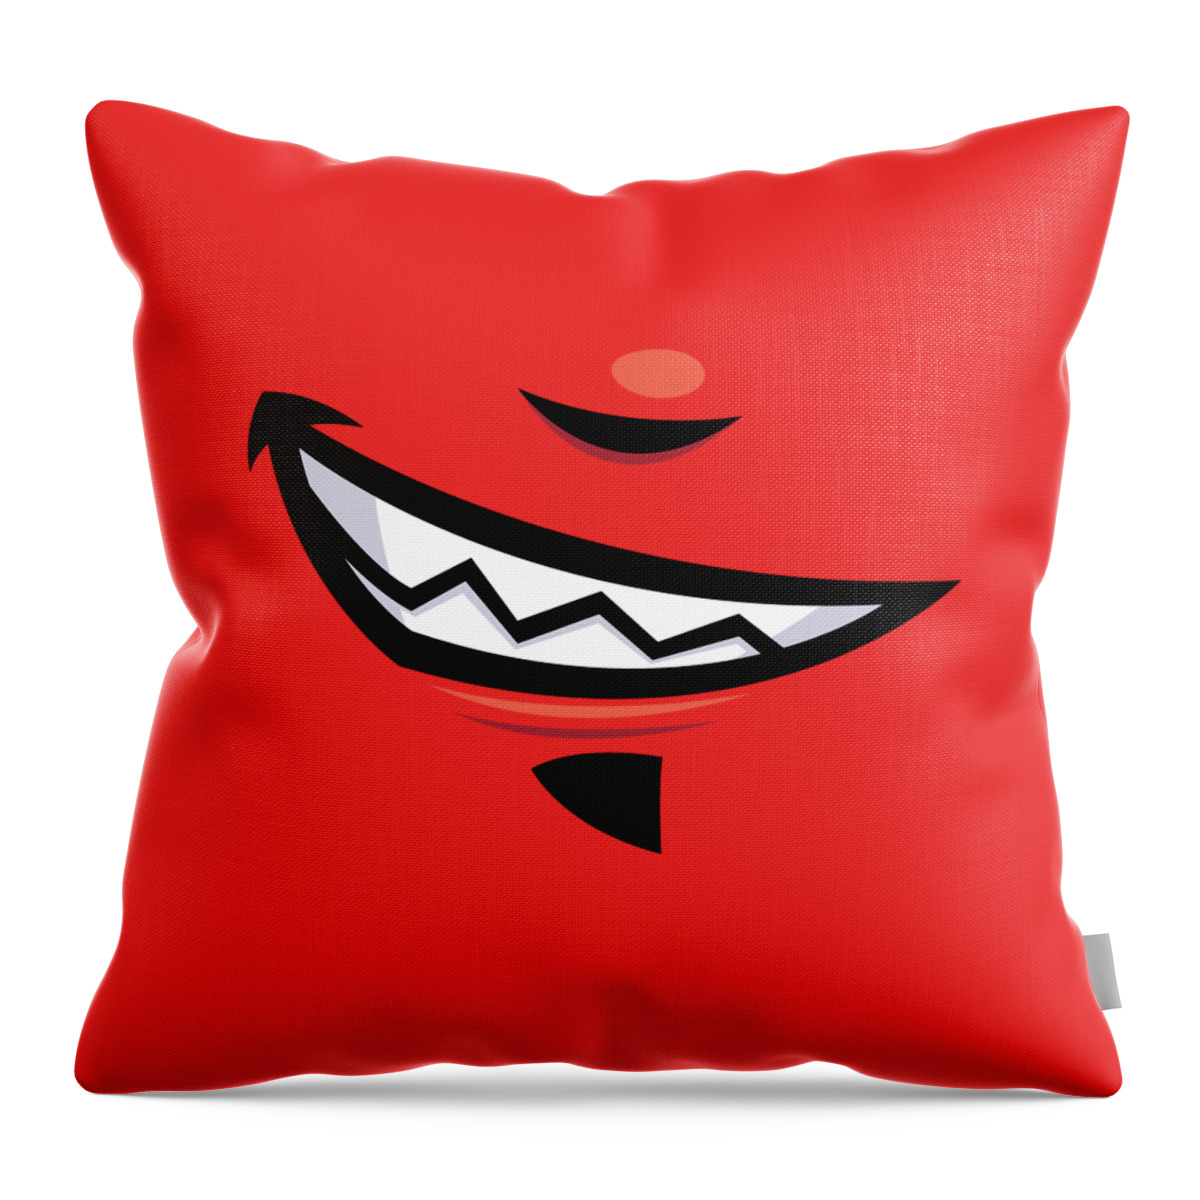 Grin Throw Pillow featuring the digital art Devilish Grin Cartoon Mouth by John Schwegel